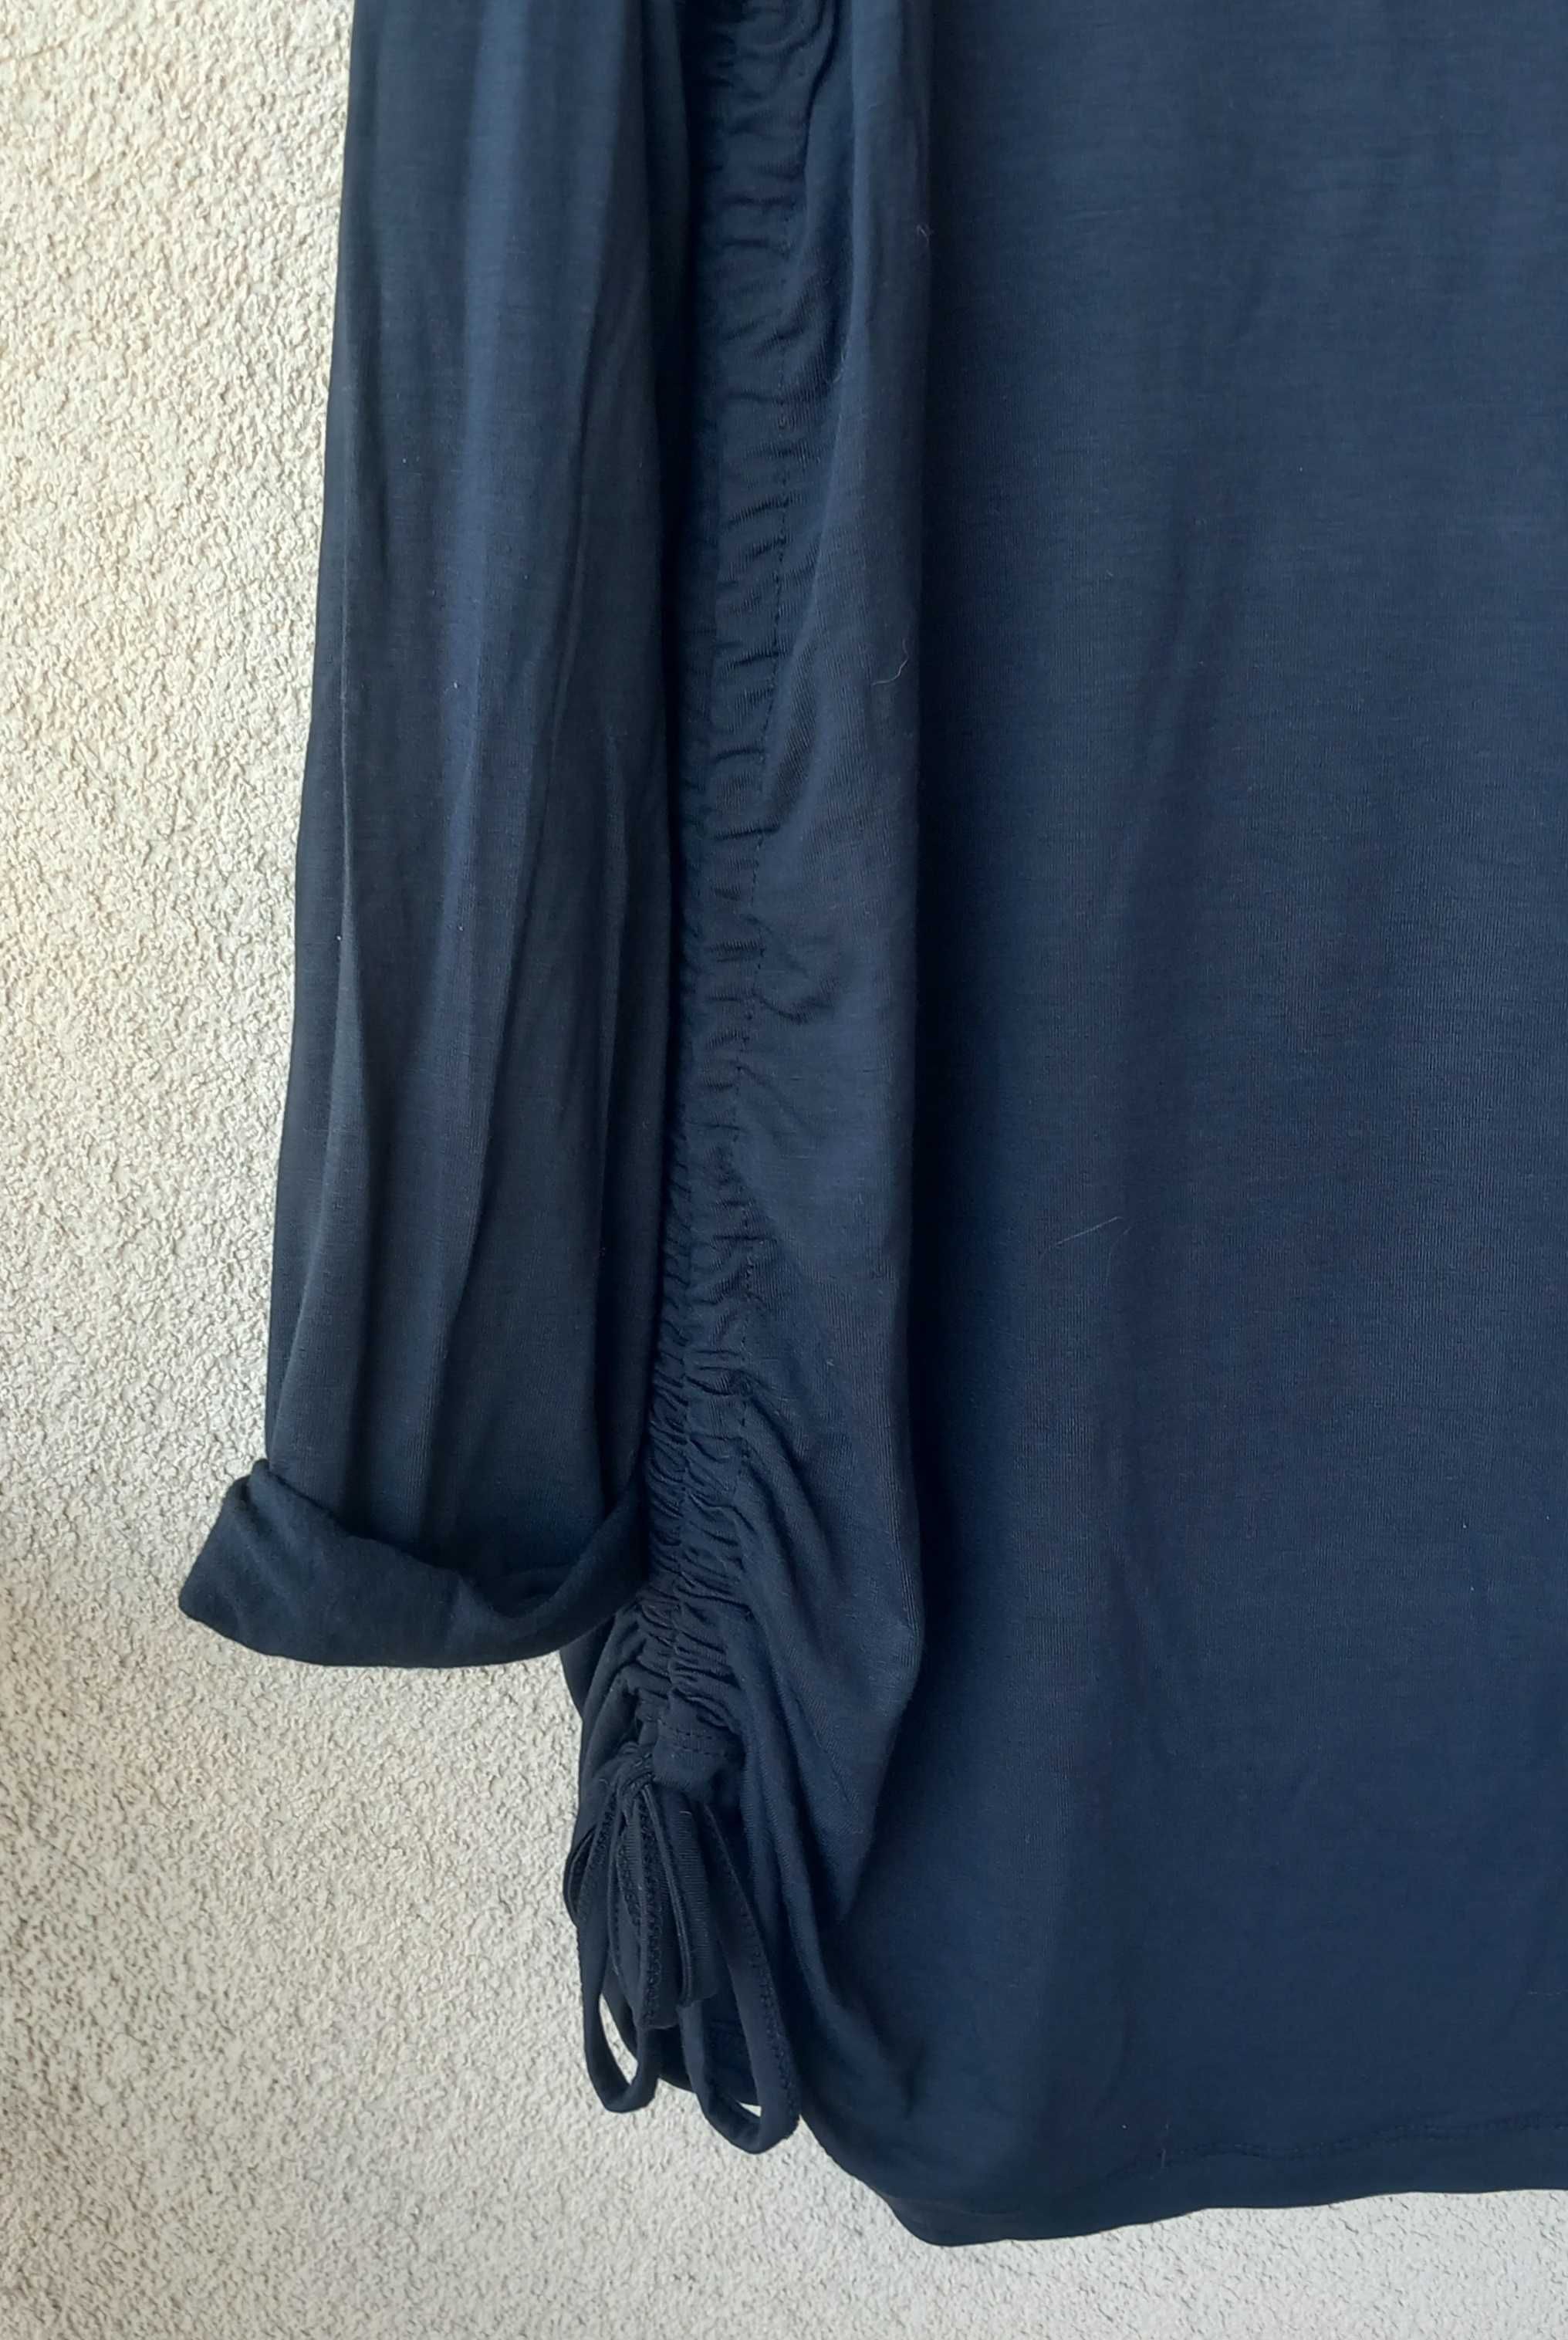 Czarna luźna, dłuższa bluzka, rozm. uniwersalny, M/L/XL